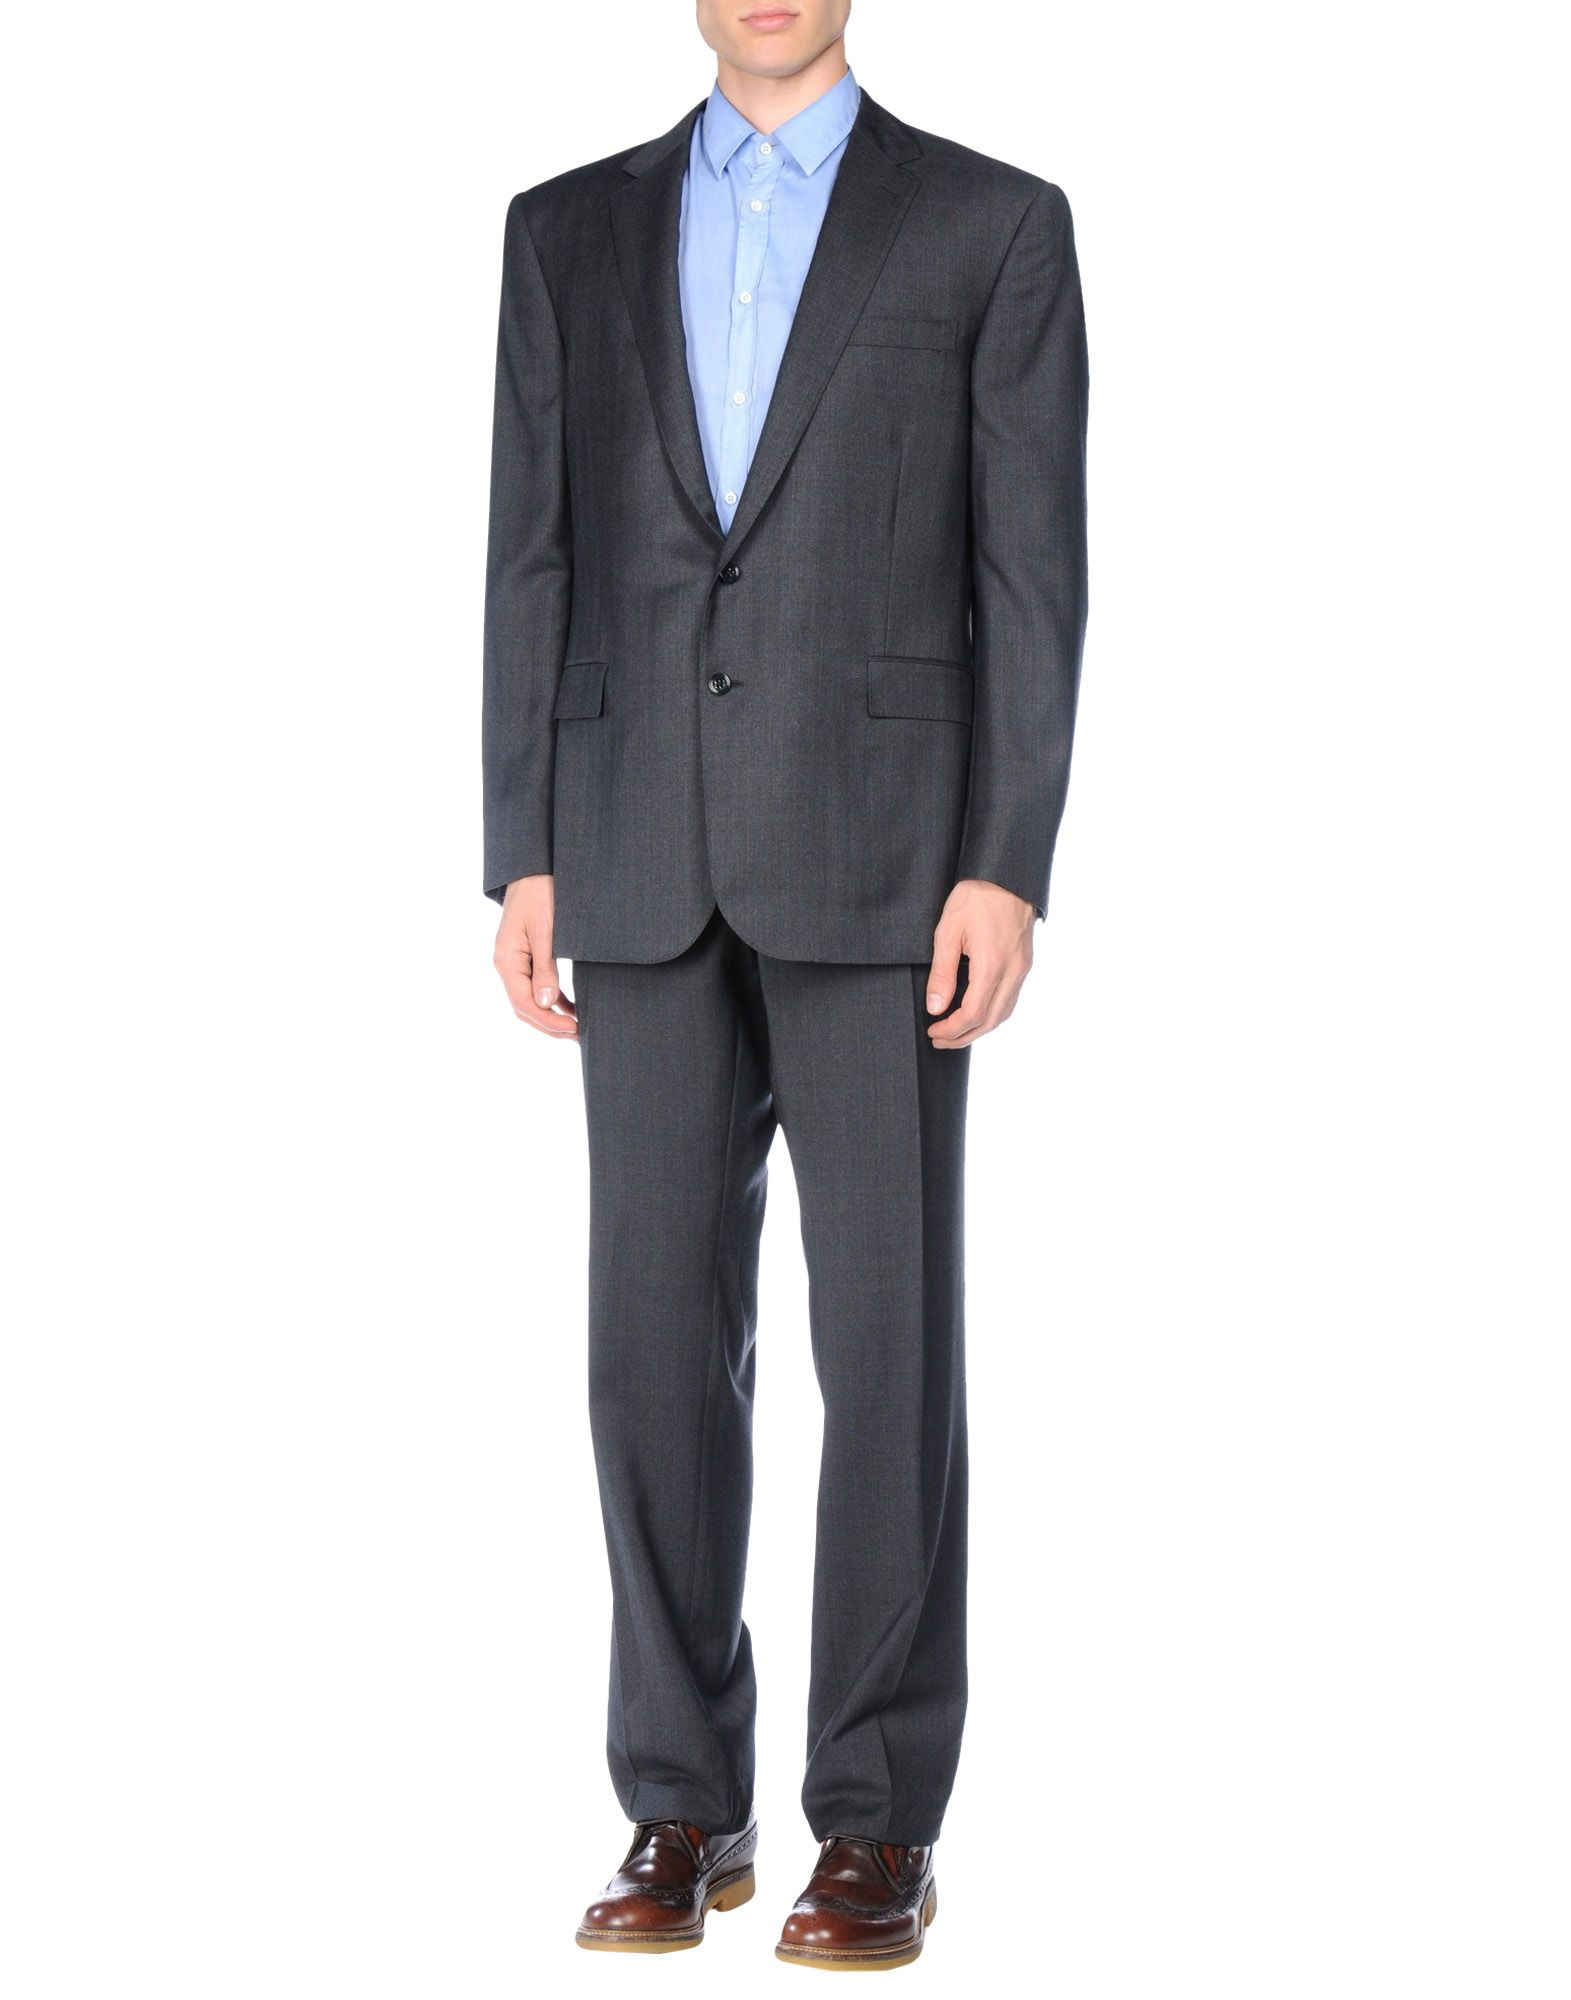 Lyst - Ralph Lauren Black Label Suit in Gray for Men